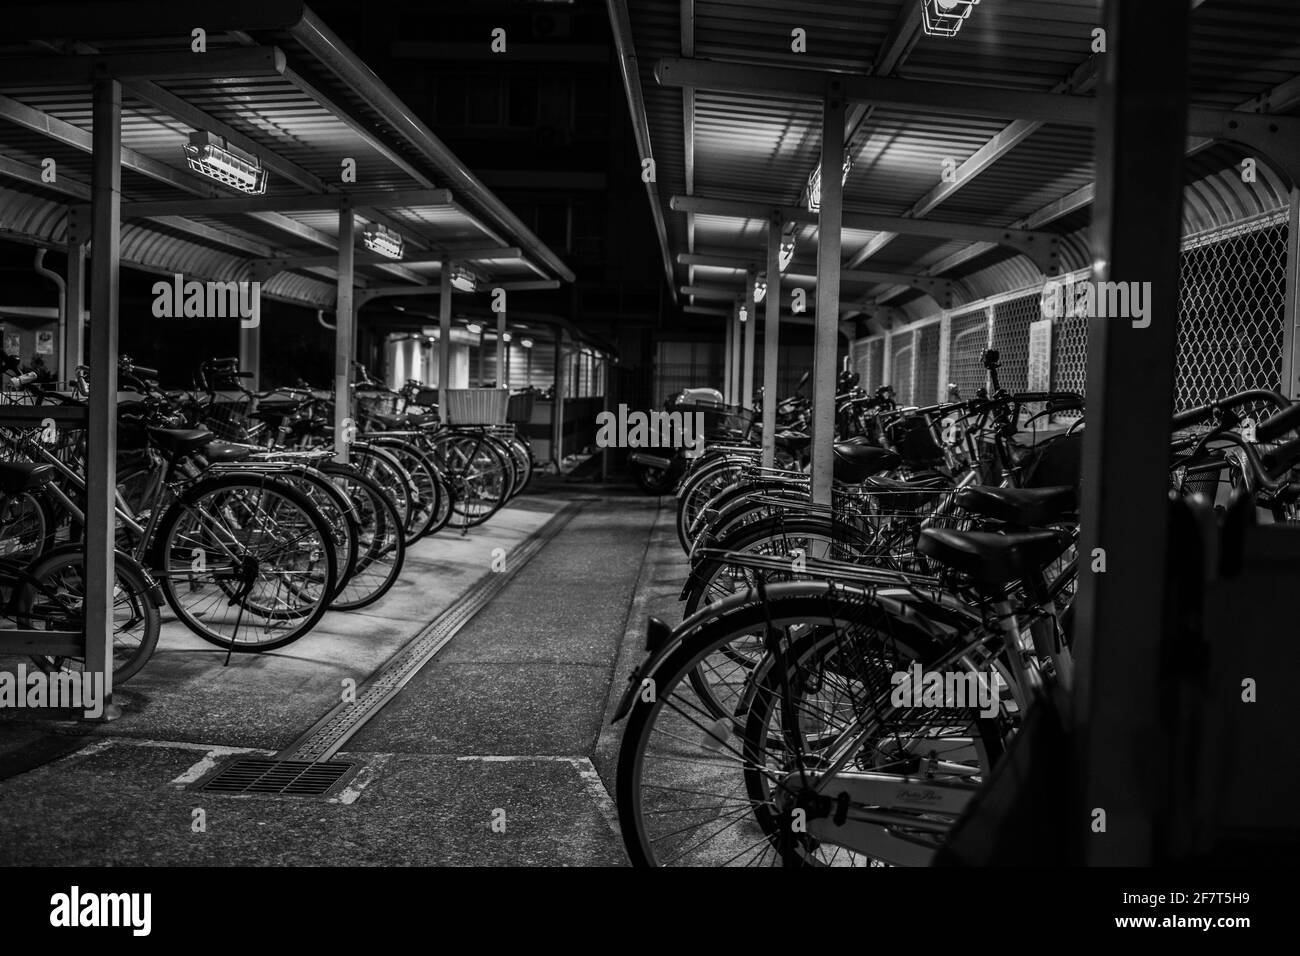 Tiro in scala di grigi di biciclette in una zona di parcheggio sotterraneo Foto Stock